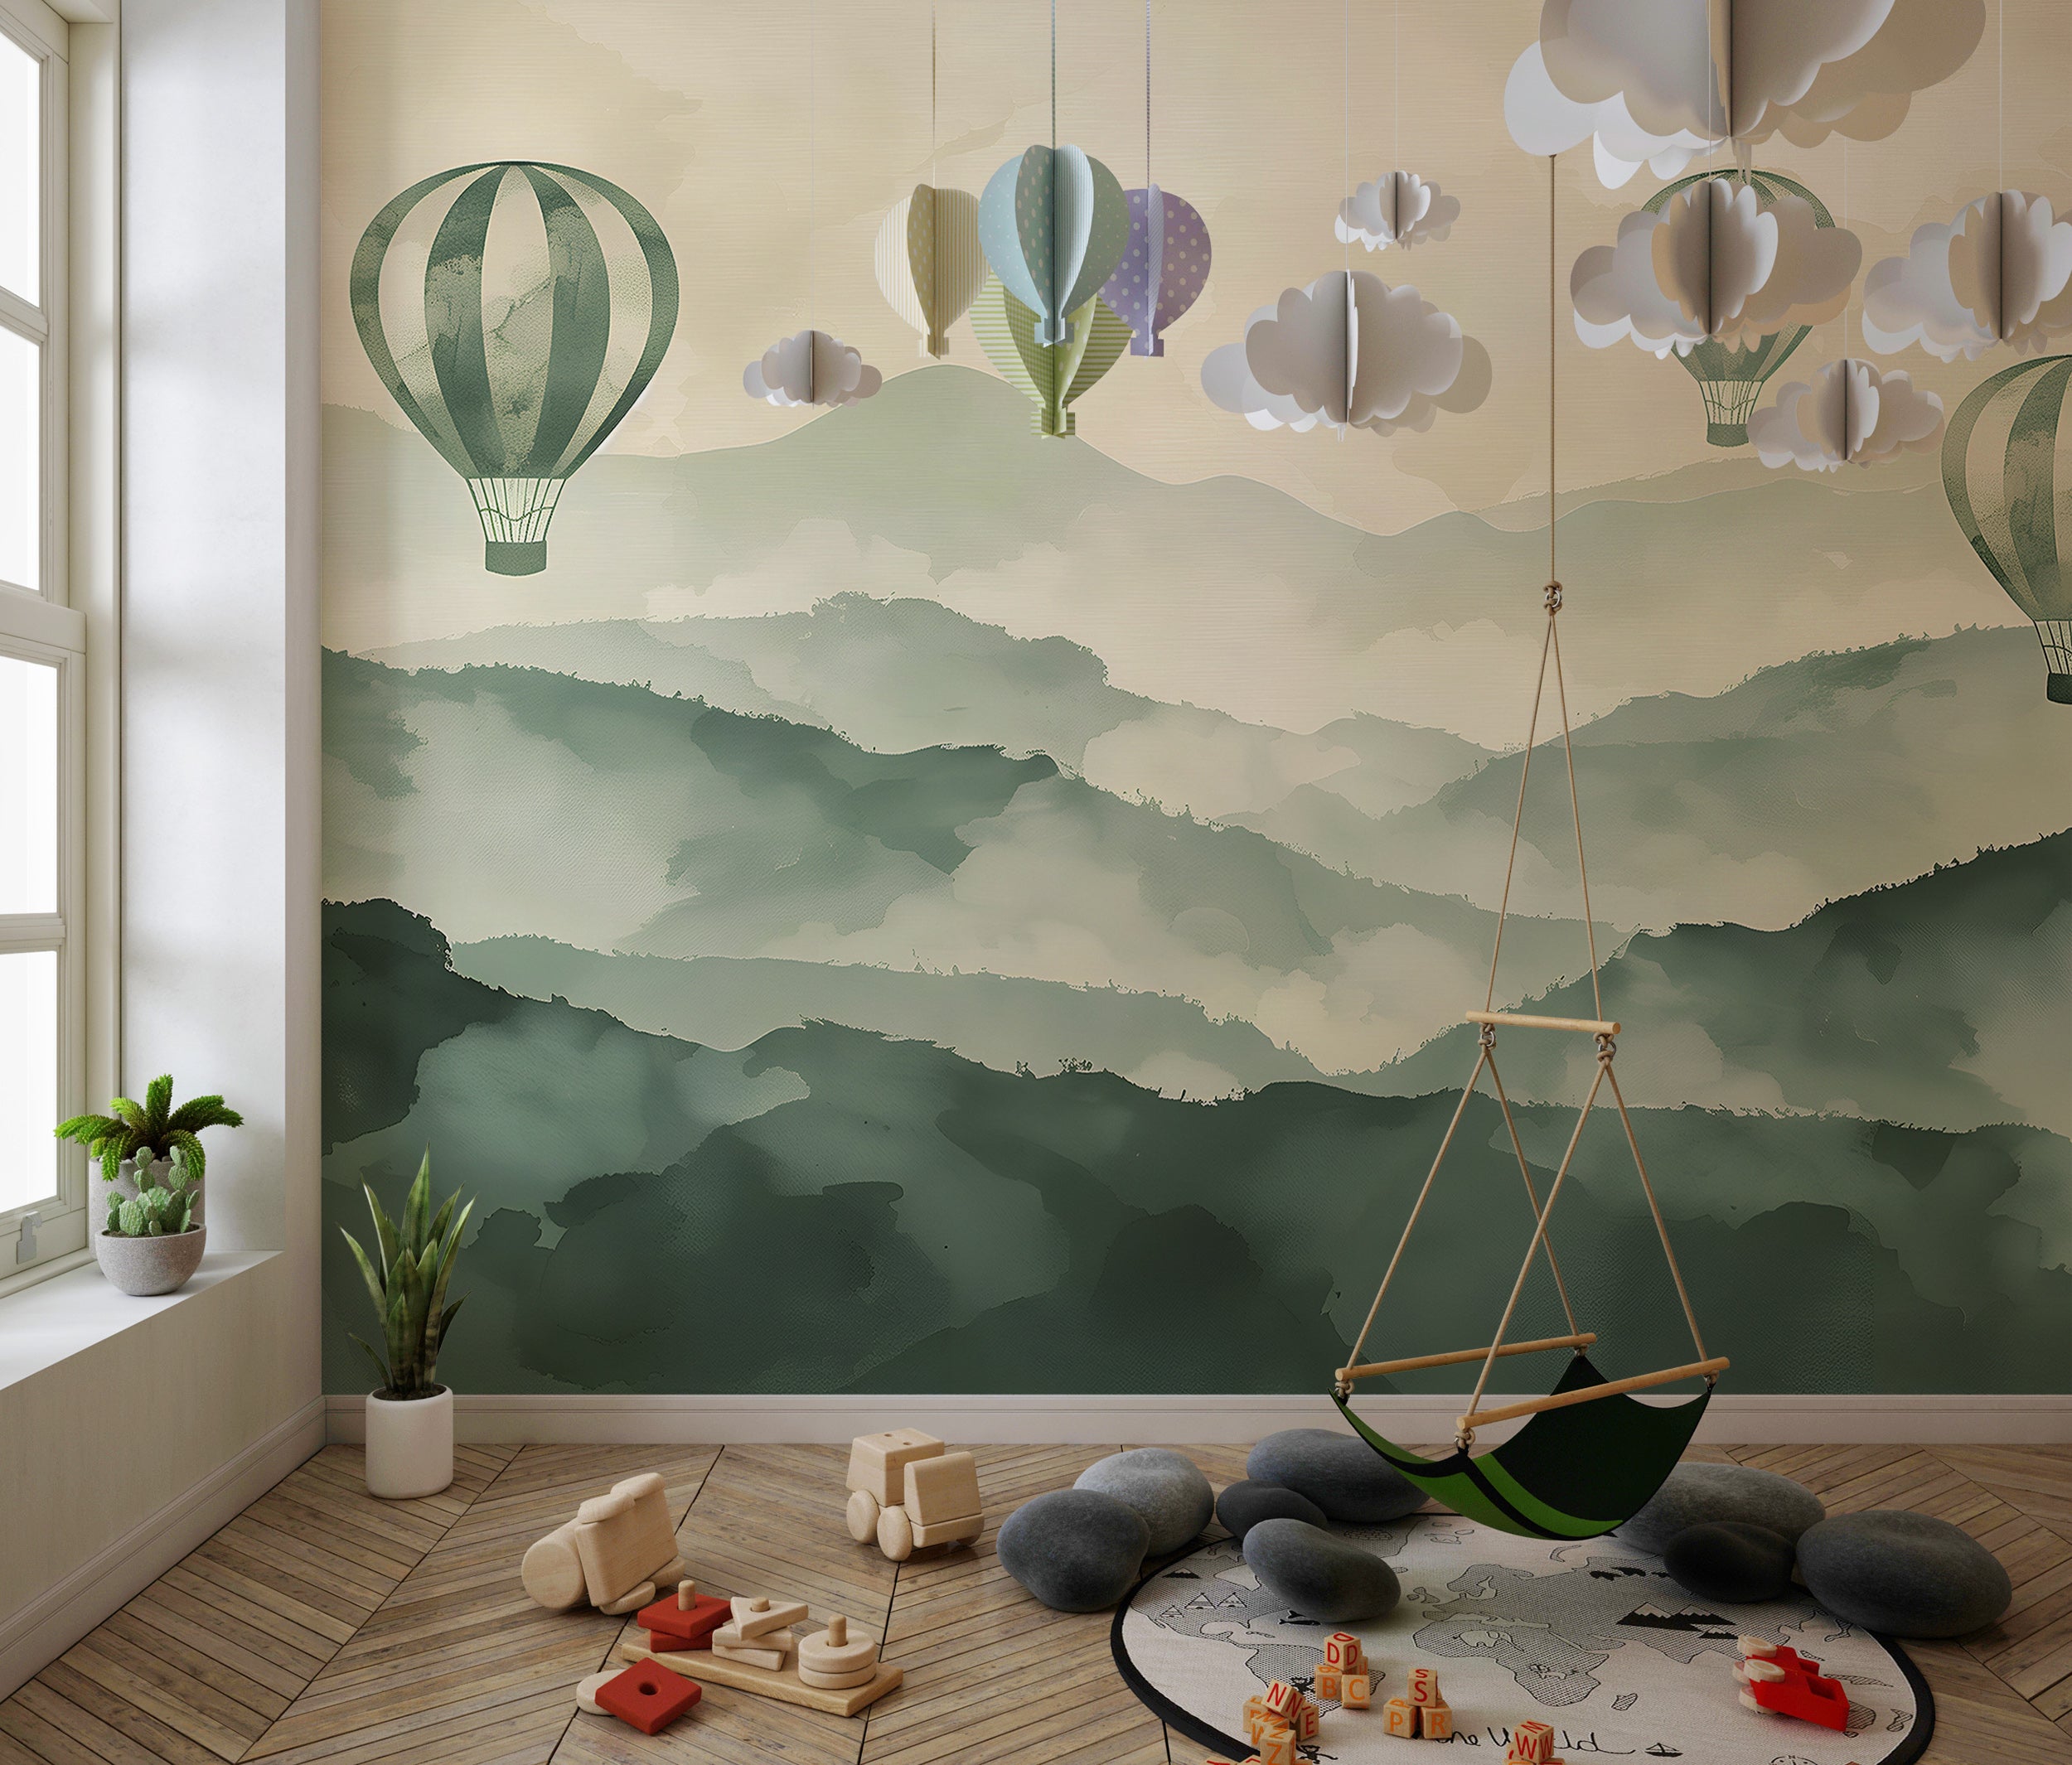 Playful hot air balloons nursery decor